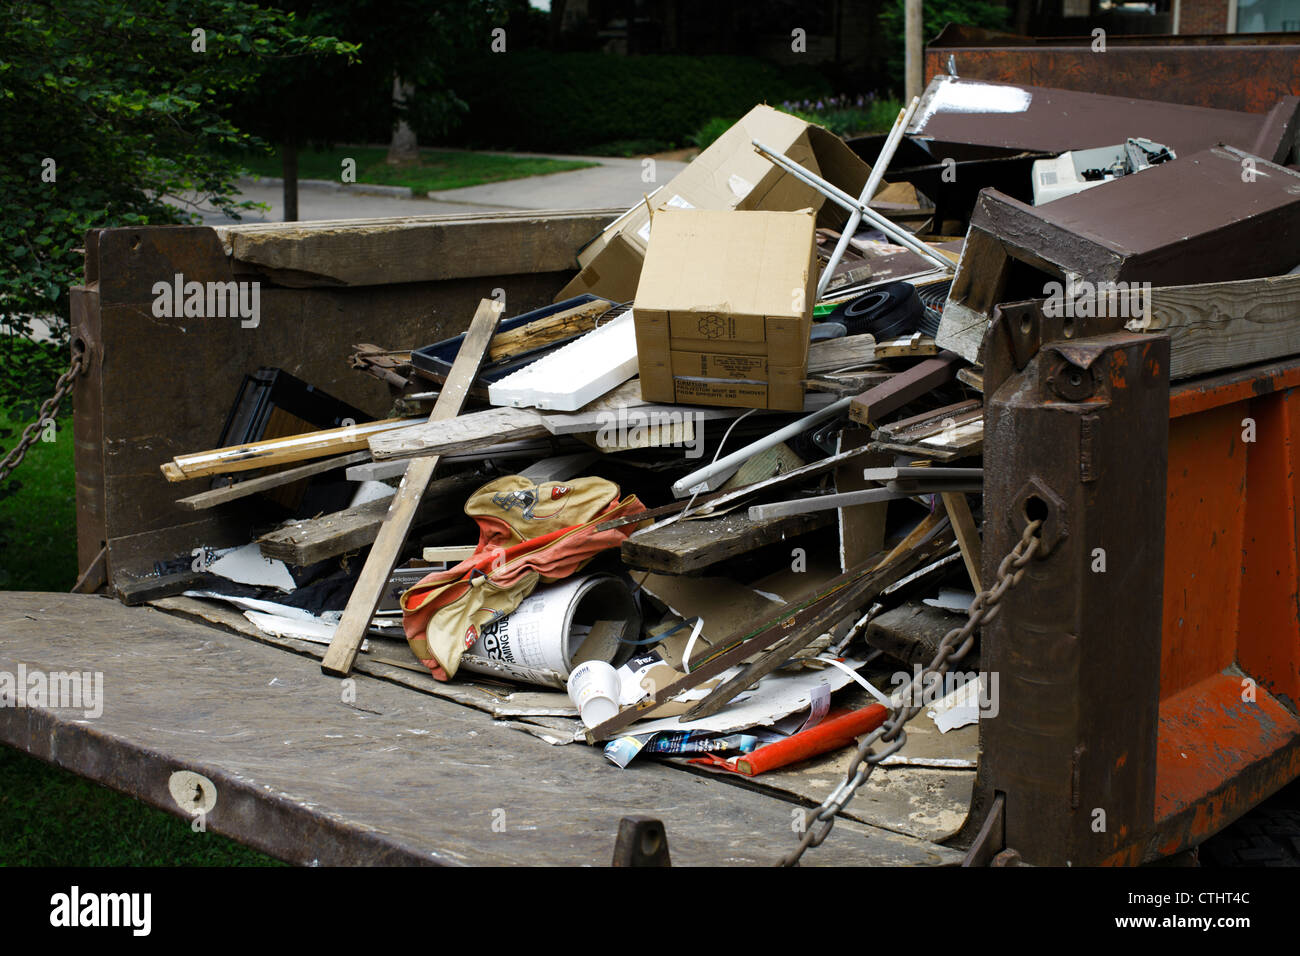 Camion riempito con vari oggetti, scatole, legname e rifiuti domestici. Foto Stock